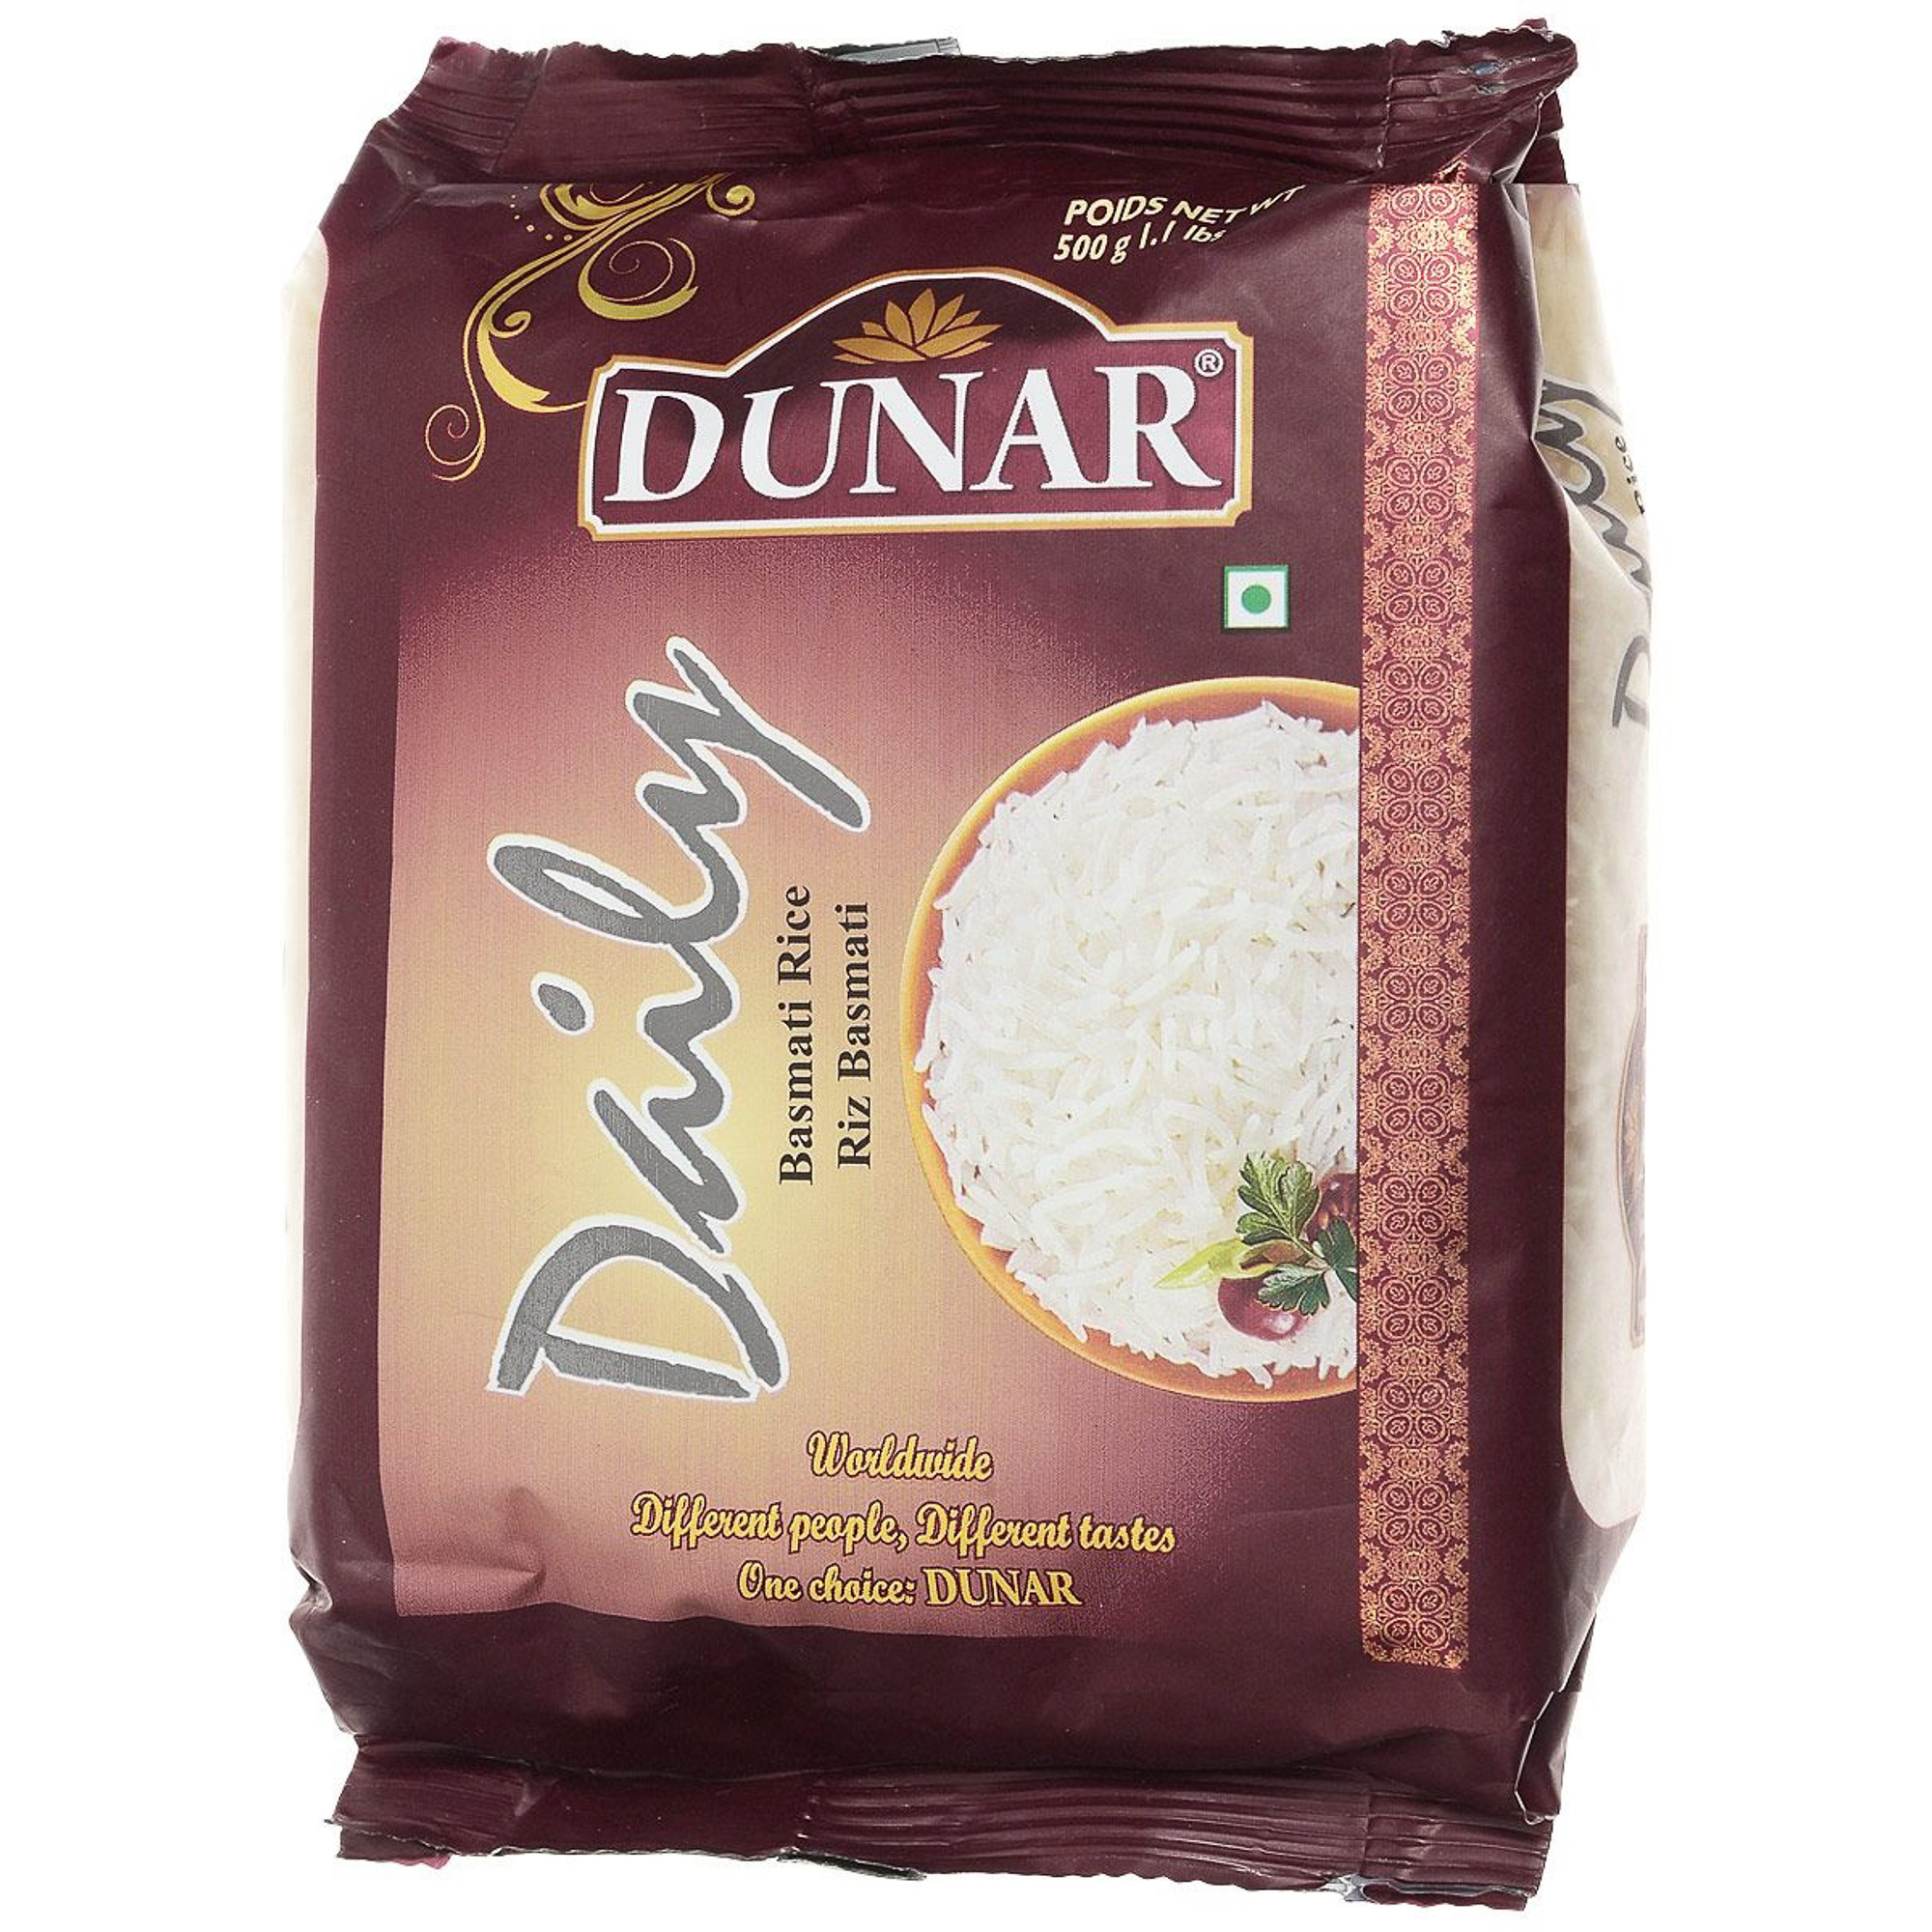 Рис басмати DUNAR Daily 500 г рис басмати дейли длиннозерный шлифованный частично пропаренный dunar индия 500г